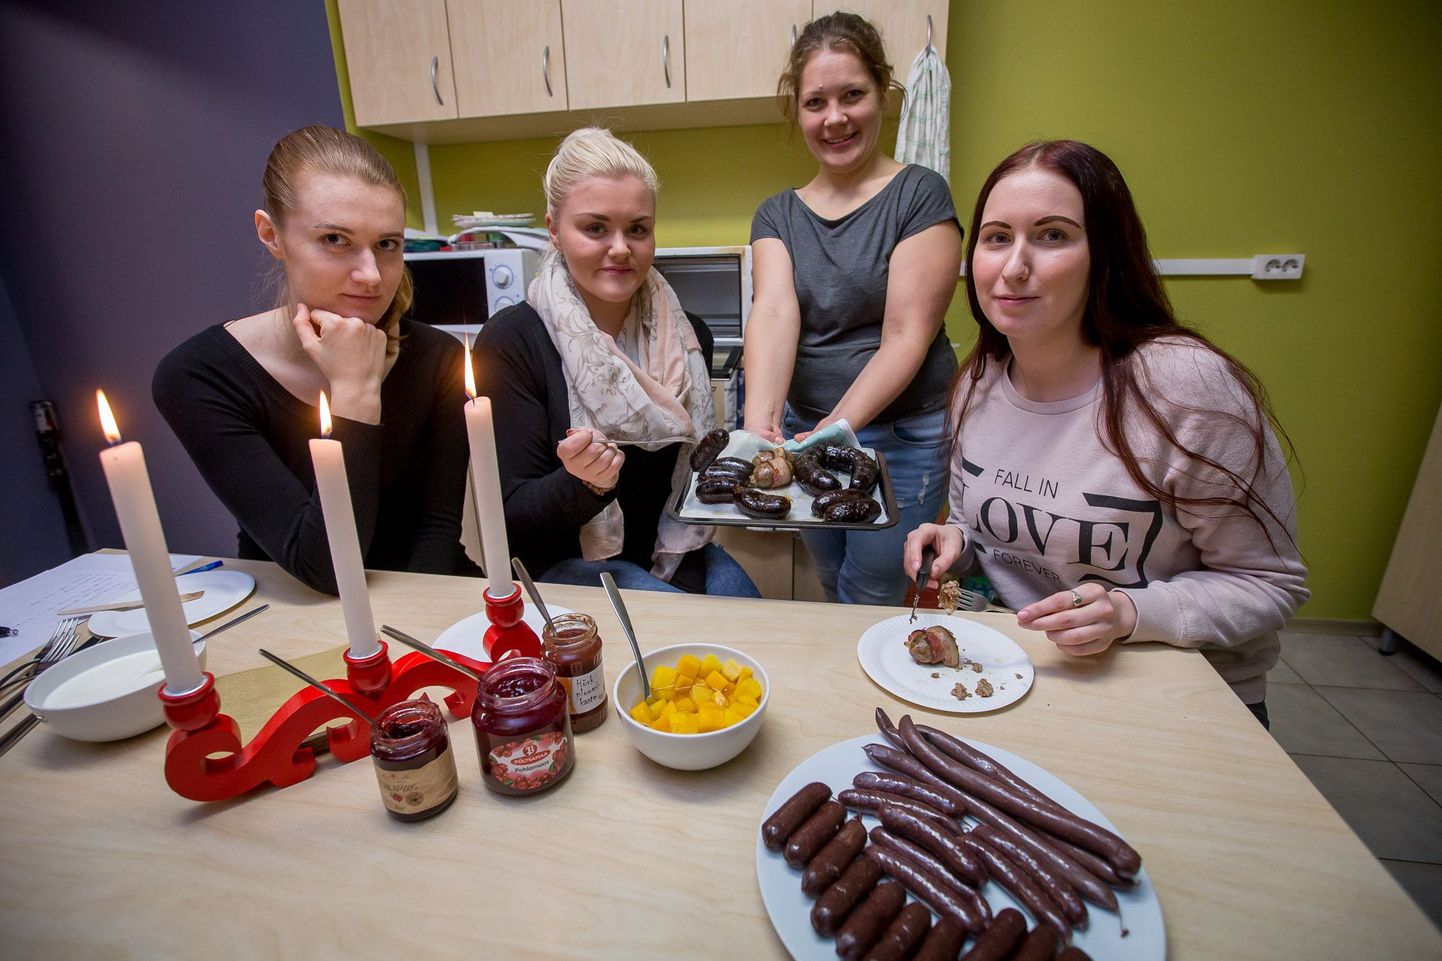 Ühikaköögis valminud verivorstidele andsid oma hinnangu (vasakult istuvad) Tallinna ülikooli tudengineiud Eliis, Anett ja Liis.